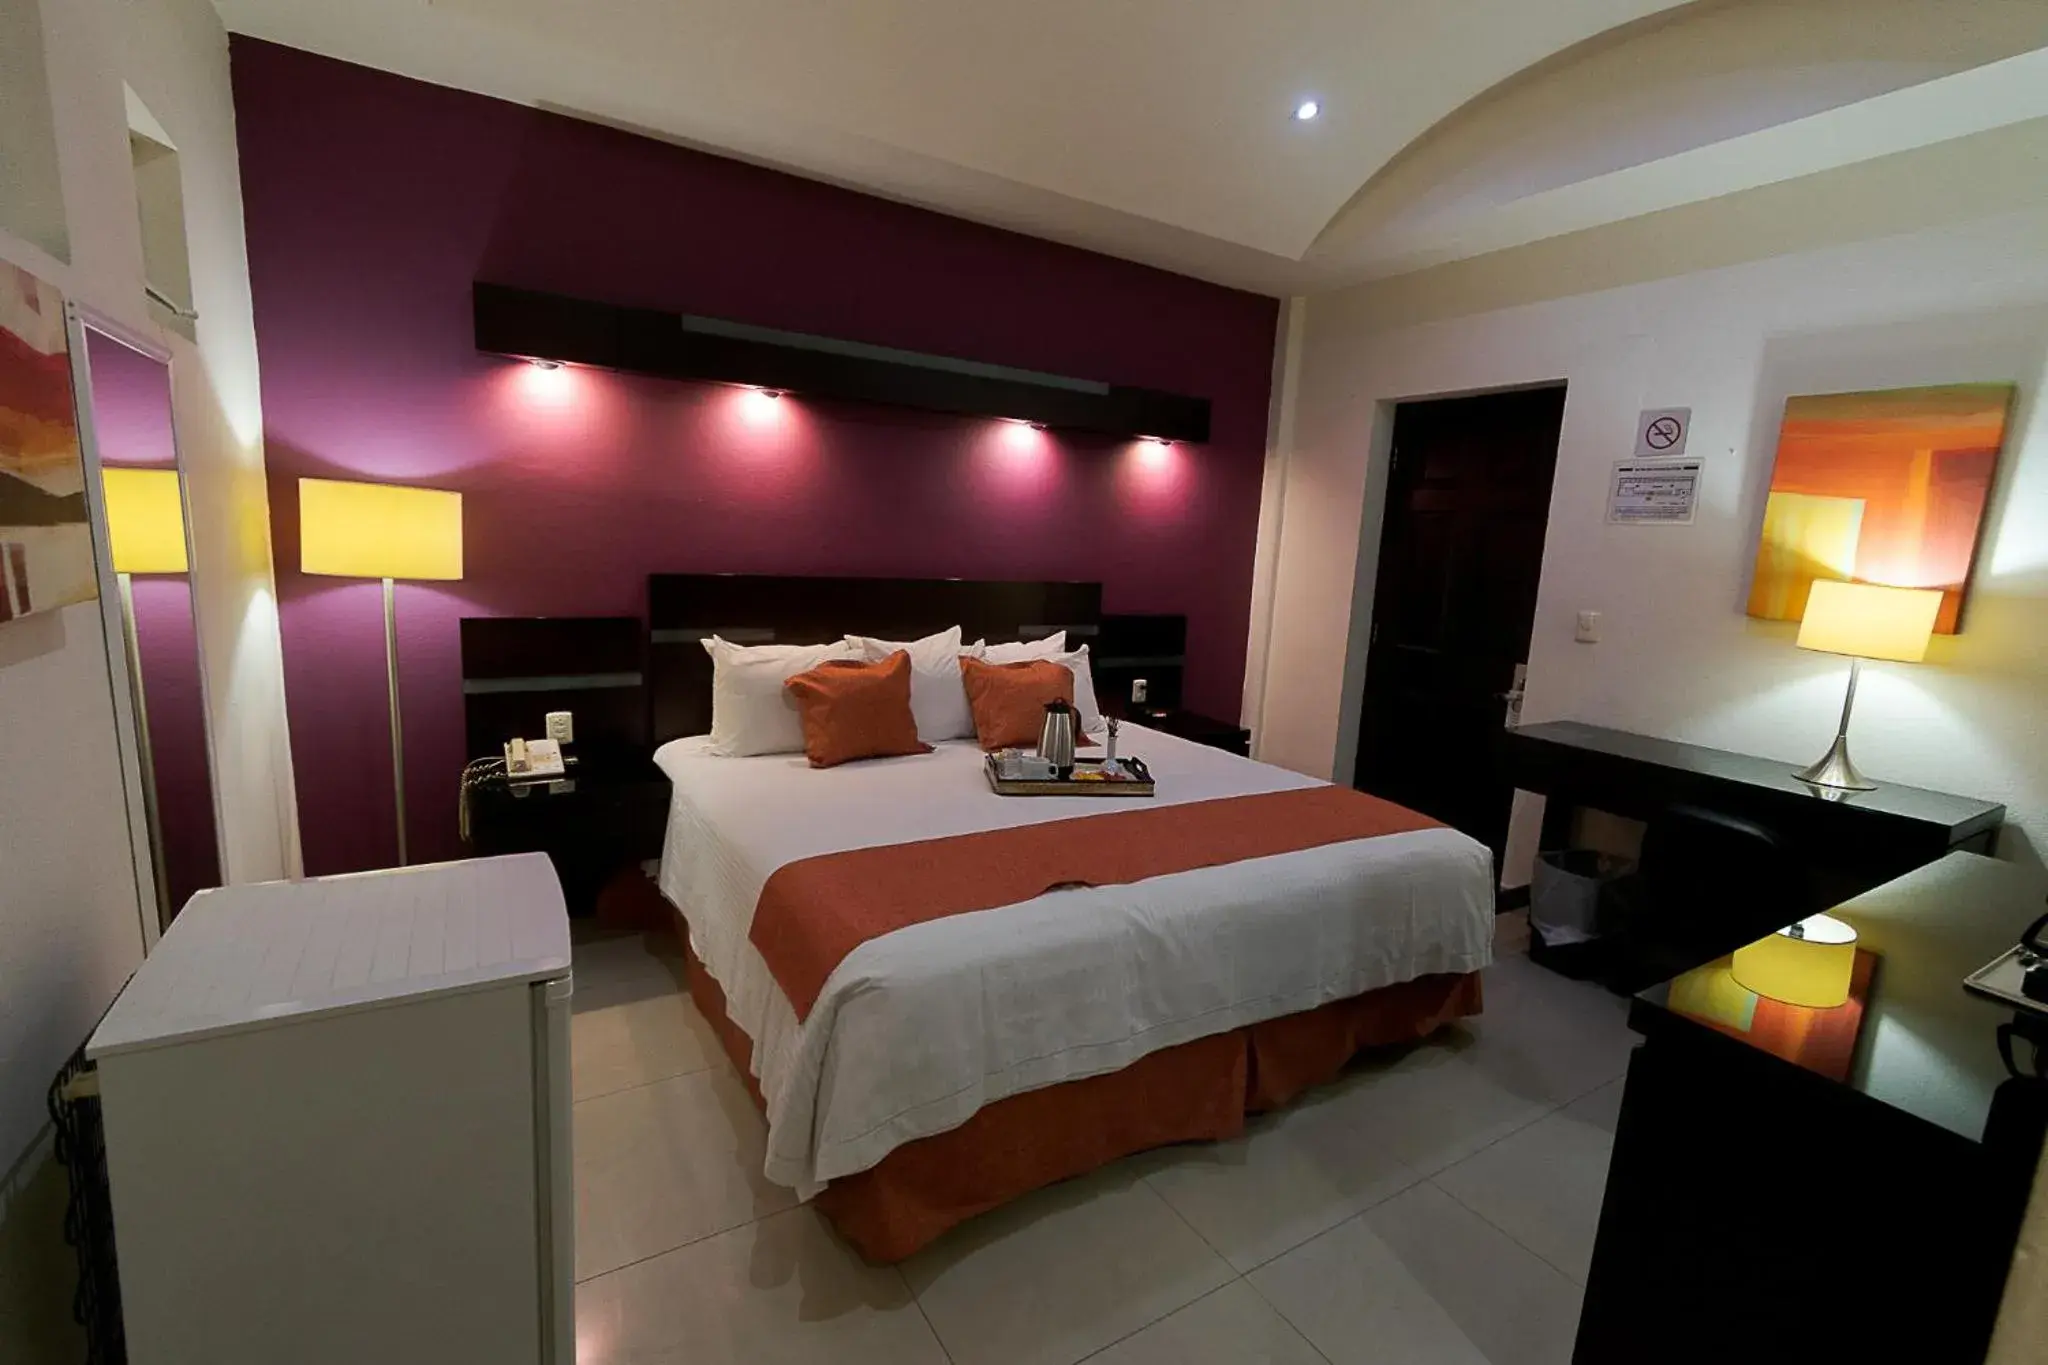 Standard King Room in Hotel Poza Rica Centro